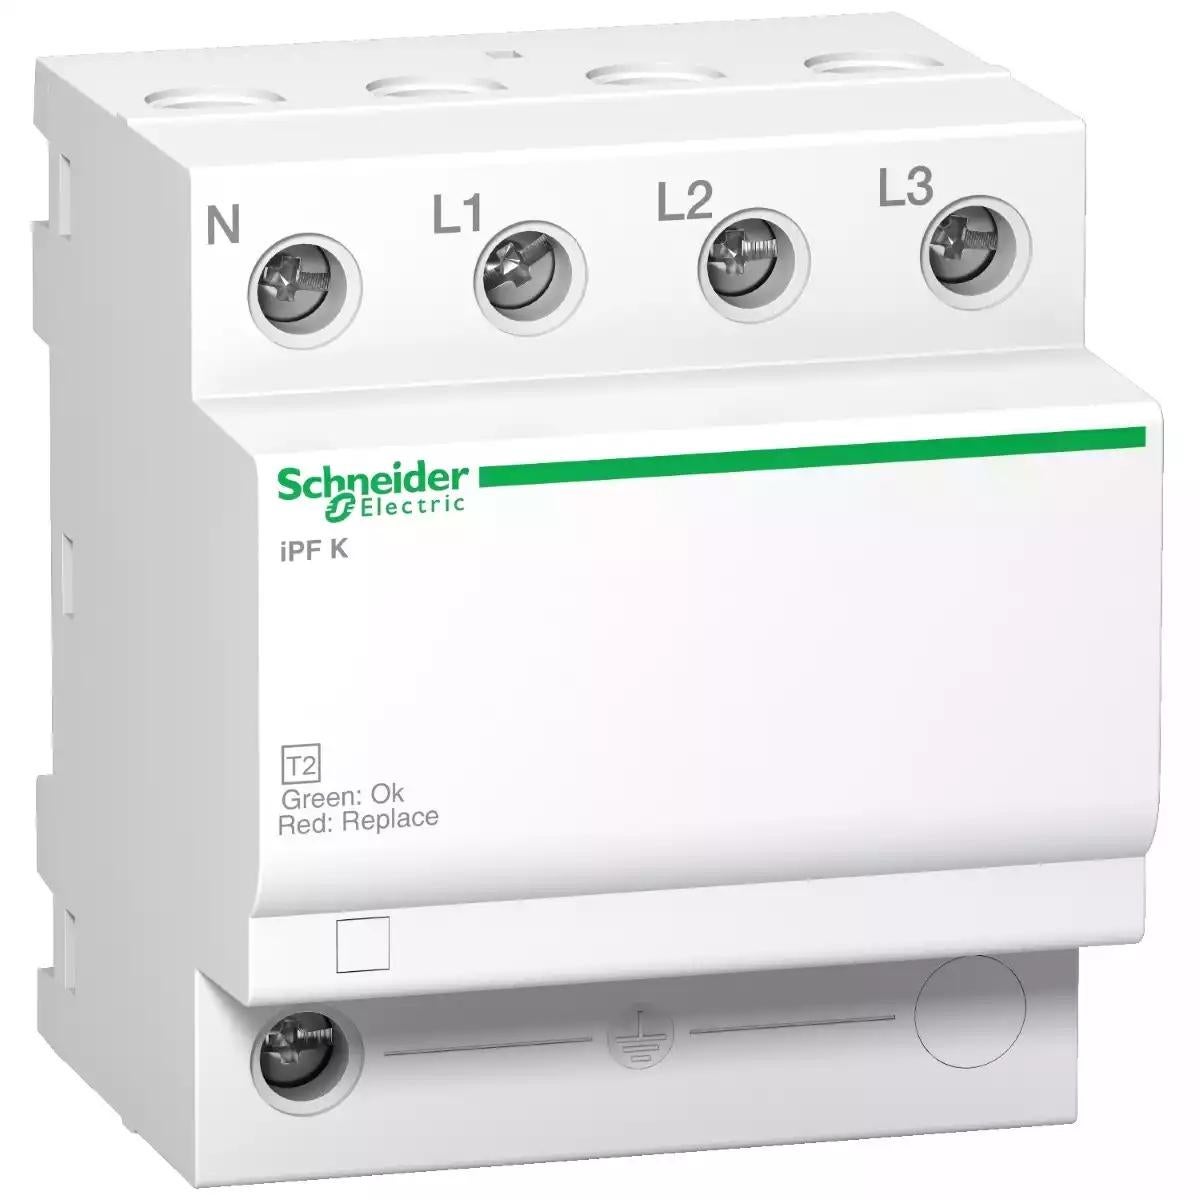 Schneider Electric Acti 9 iPF K 65 modular surge arrester - 3 poles + N - 340V